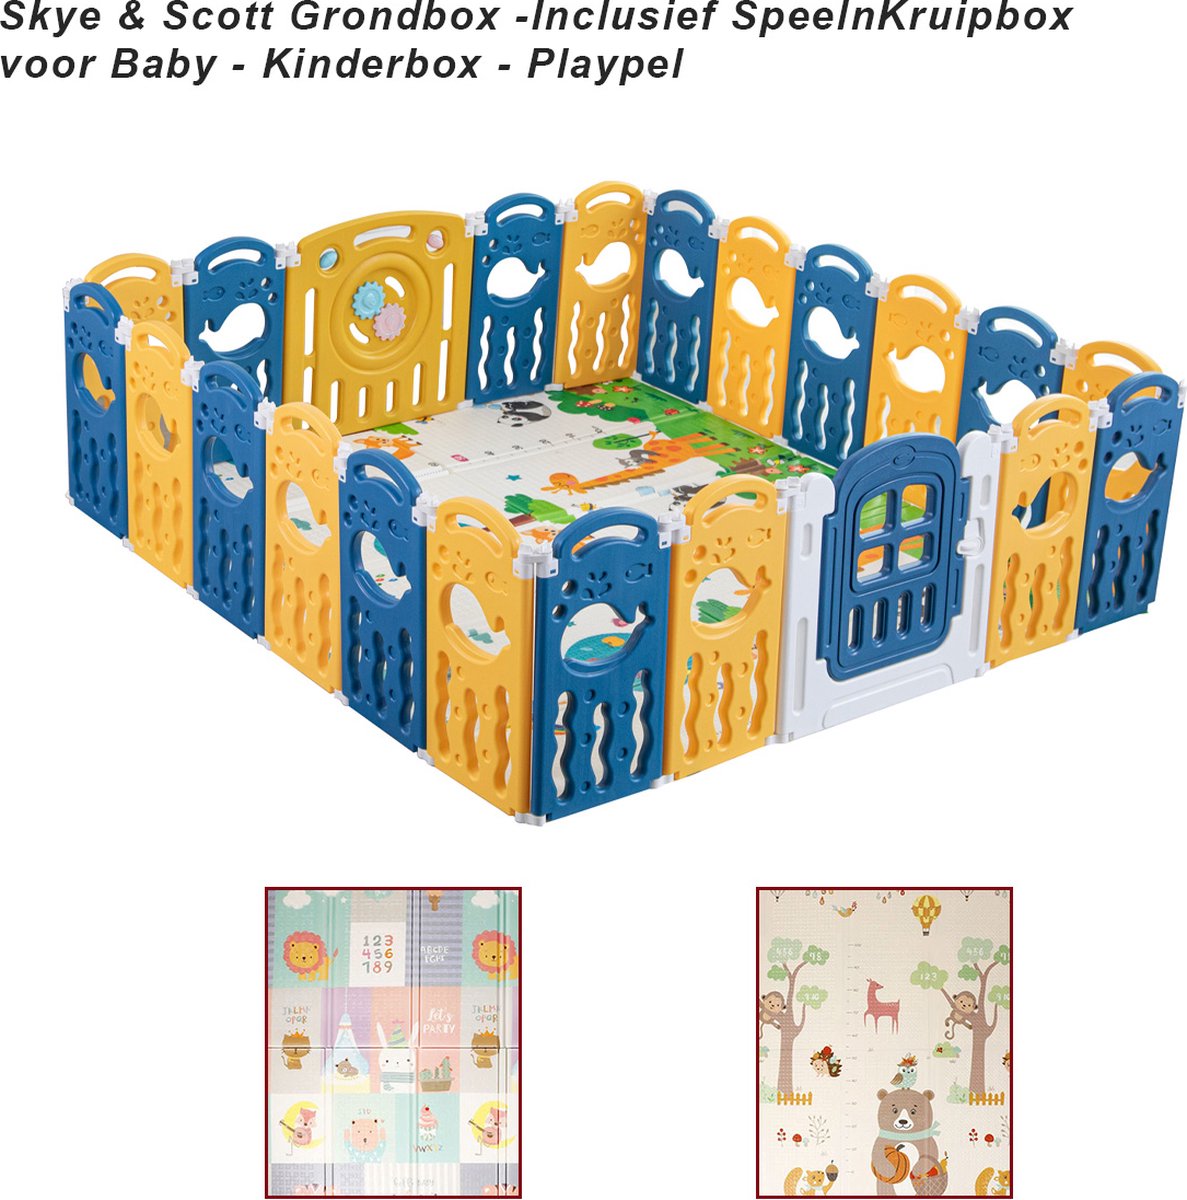 K IKIDO Kunststof Grondbox - HDPE Paneel Speelbox - Kinderbox - Zuigeling & Peuter Spelen Hek - Opvouwbare Baby Speelruimte met Veiligheidsslot - Educatief Speelgoed - met dubbelzijdige opvouwbaar speelmat - 180 * 210 cm